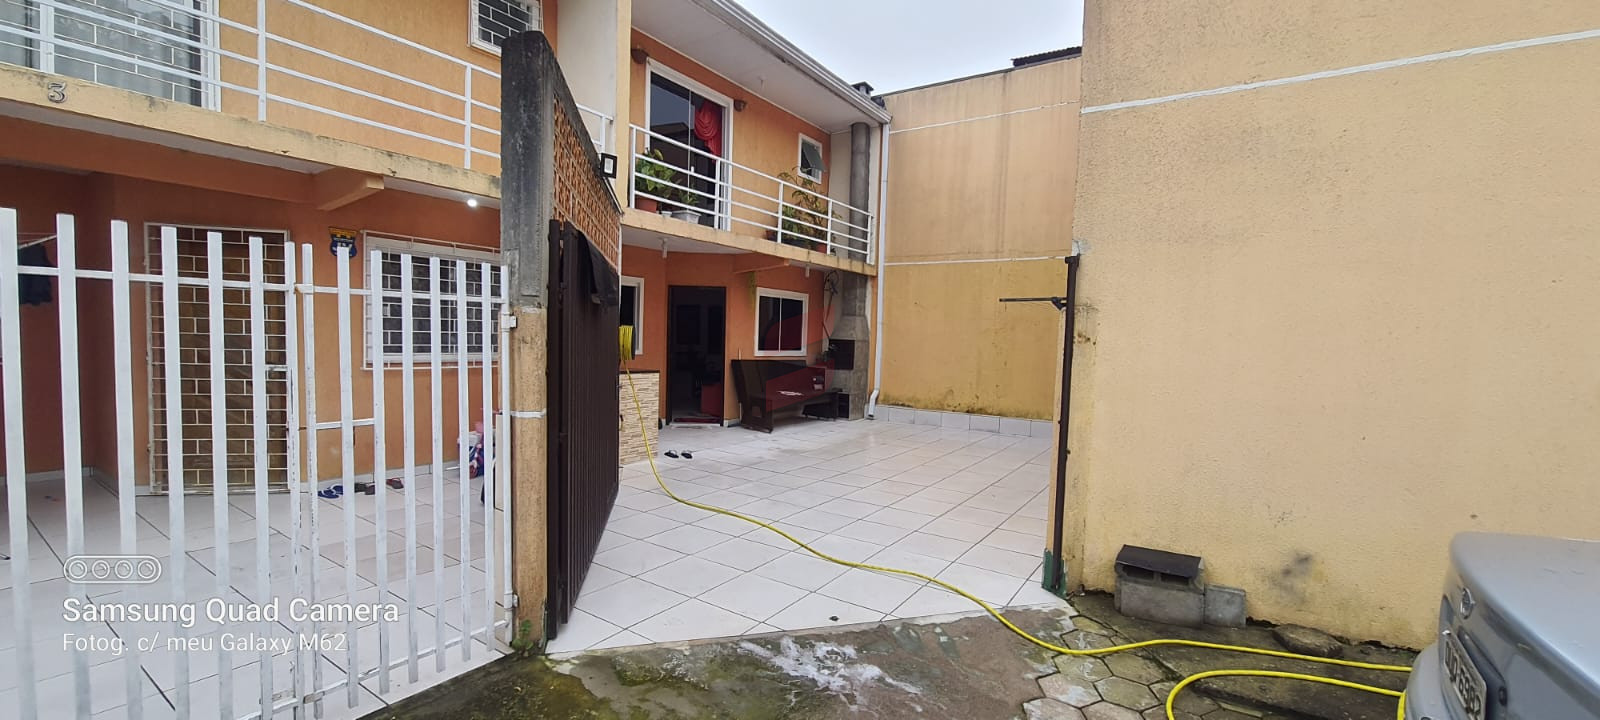 SOBRADO com 2 dormitórios à venda com 108.31m² por R$ 310.000,00 no bairro Vila Rosa - PIRAQUARA / PR